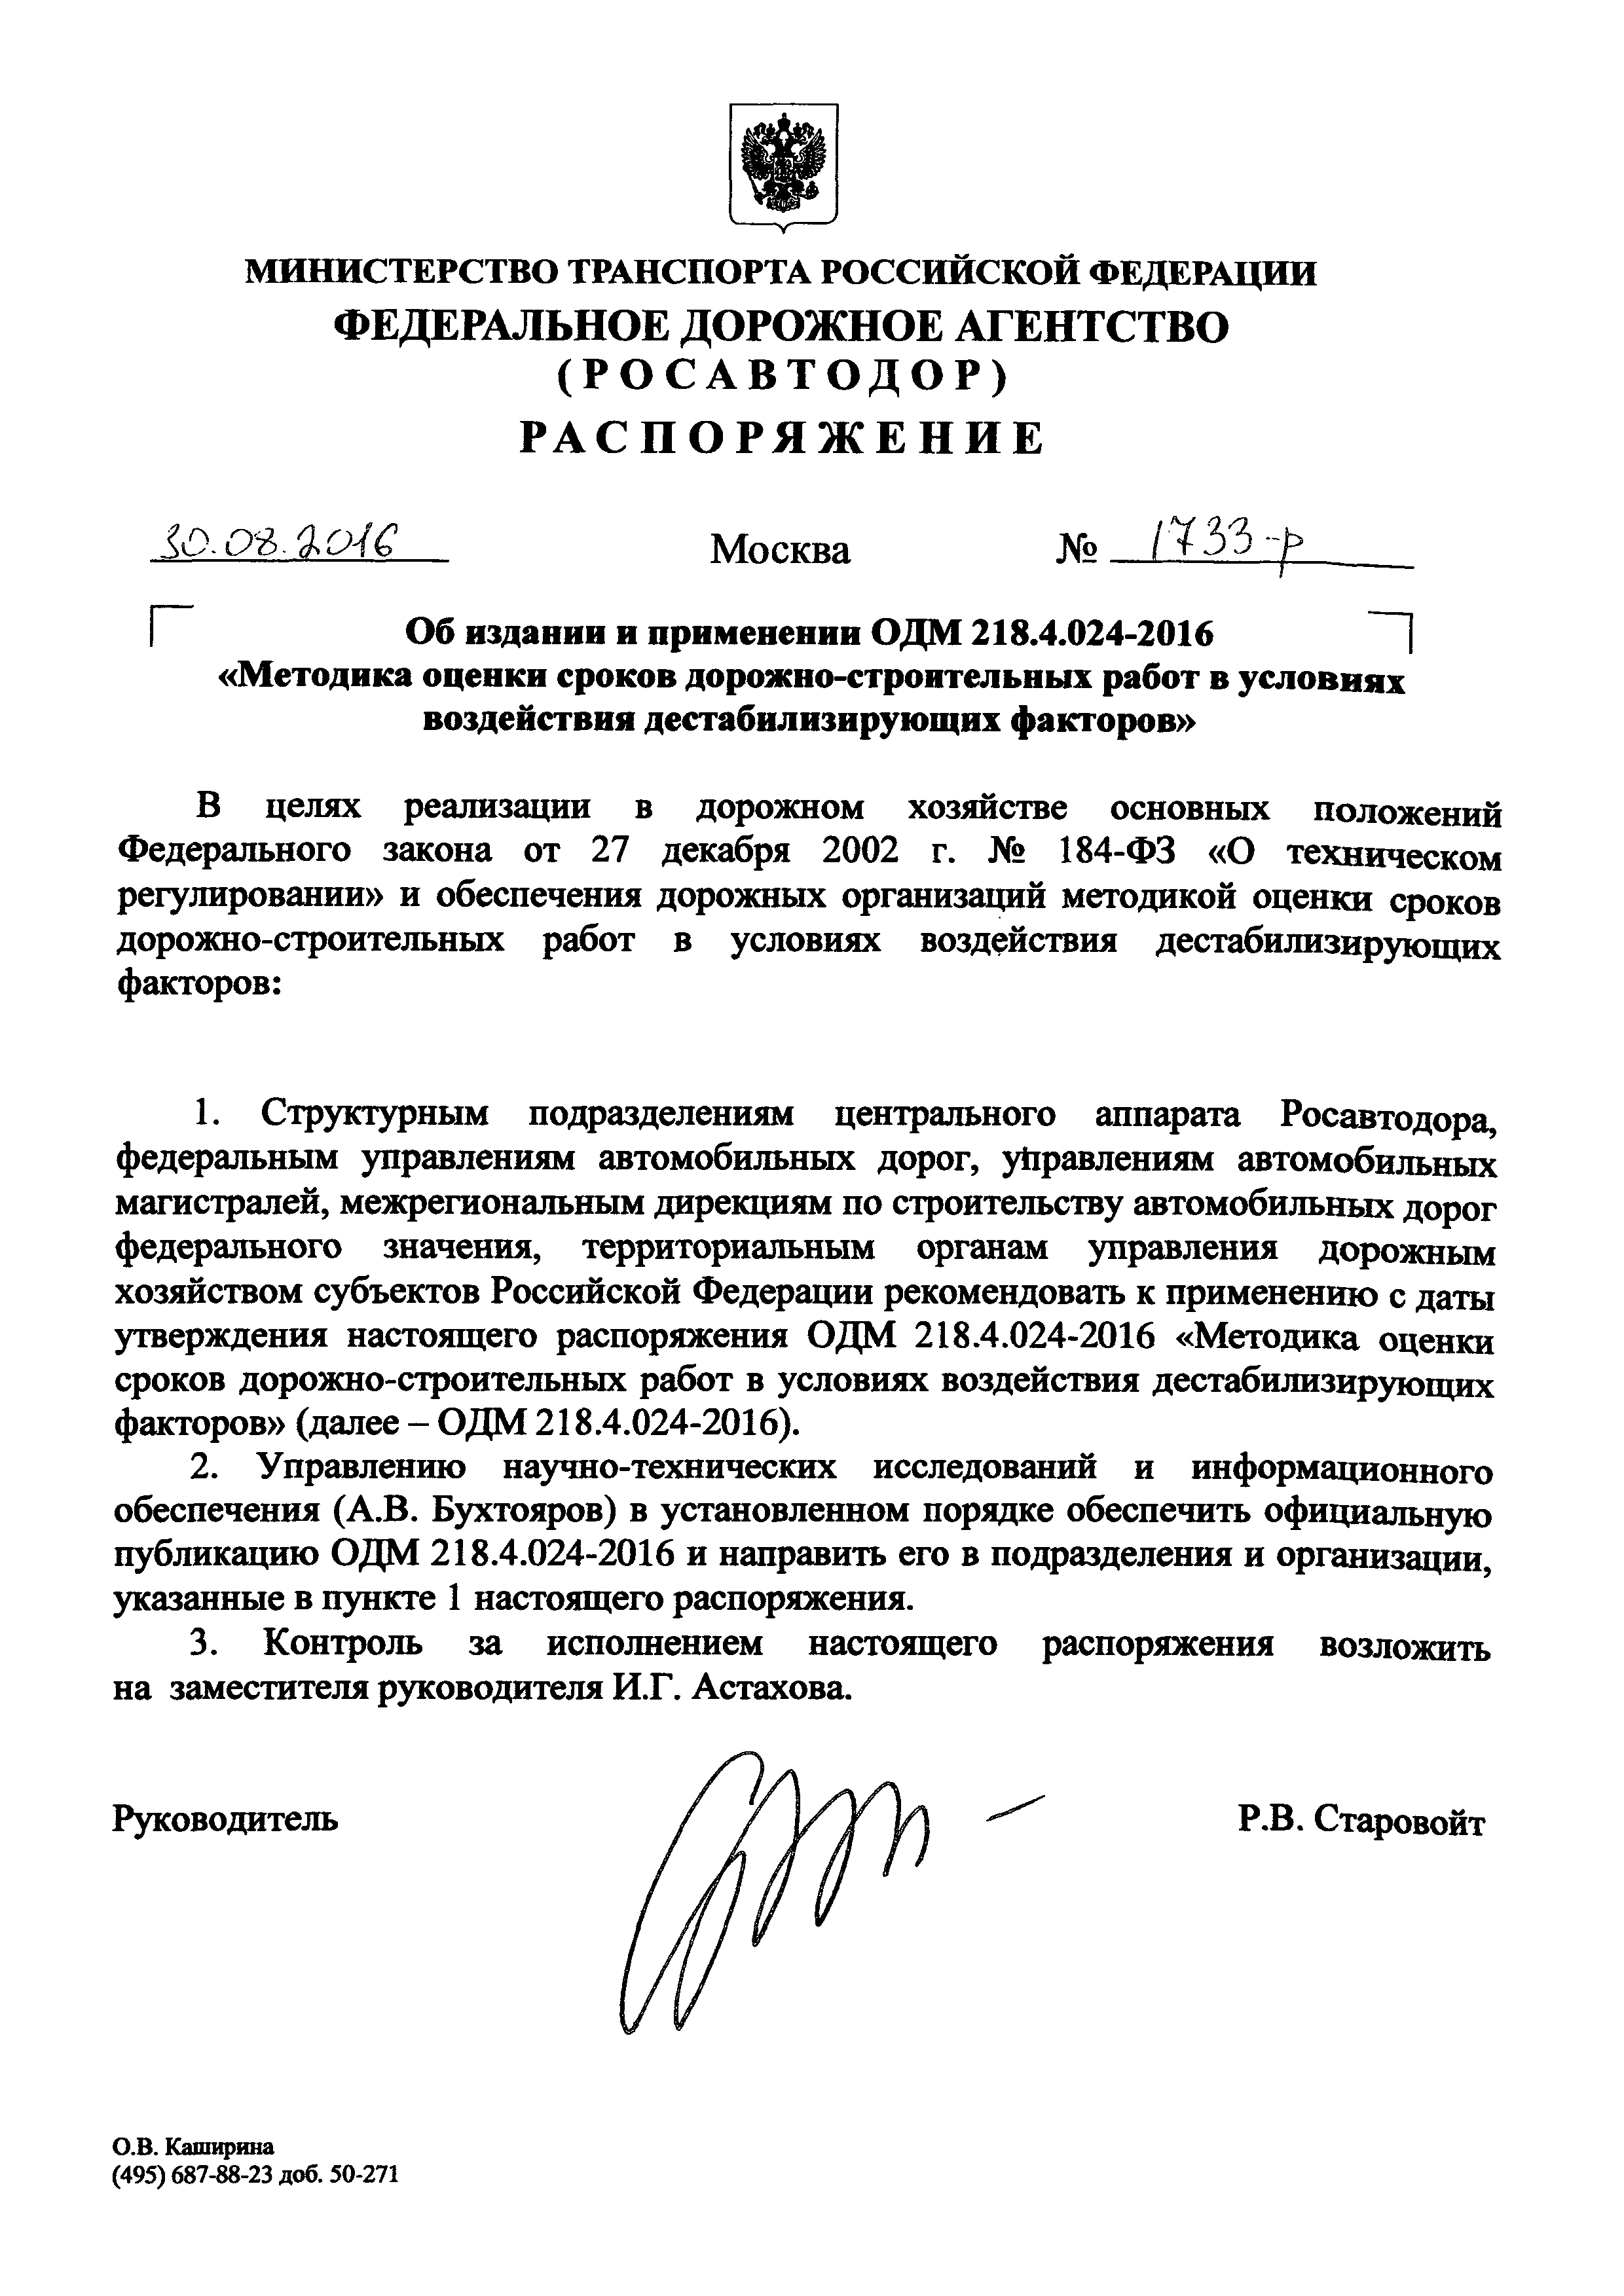 ОДМ 218.4.024-2016